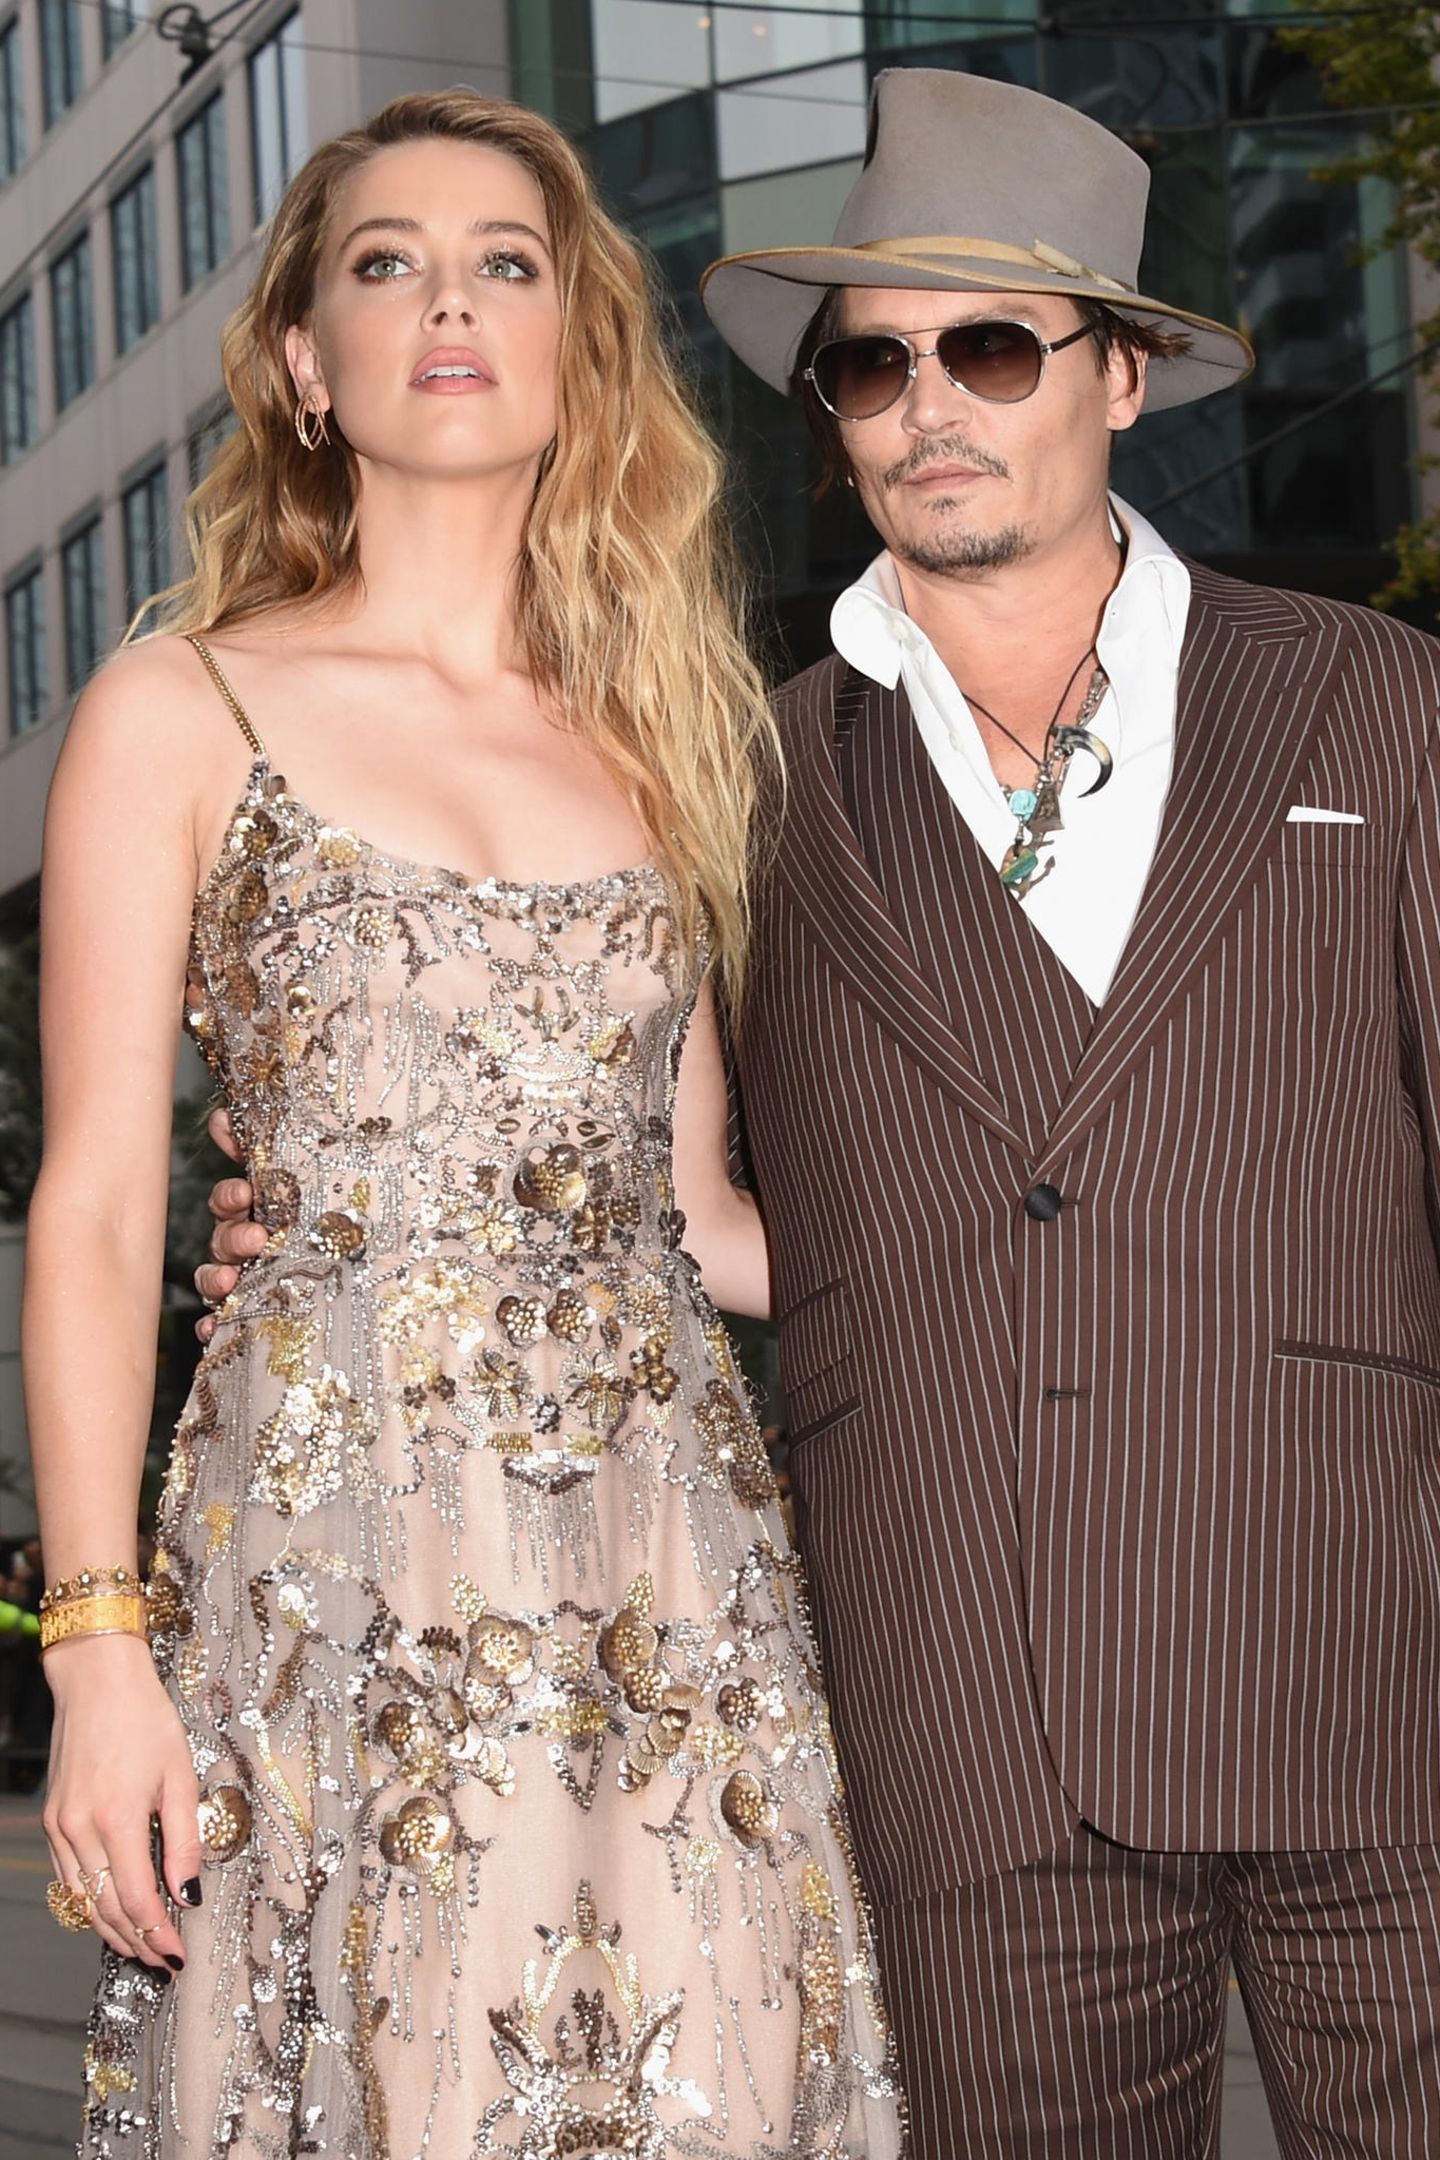 Amber Heard Ehefrau Nummer zwei: Am 4. Februar 2015 heiratet Johnny Depp Amber Heard. Die Schauspielerin ist 23 Jahre jünger als er. Im Mai 2016 reicht Amber die Scheidung ein - er soll sie geschlagen haben. Eine bittere Schlammschlacht vor Gericht ist die Folge.